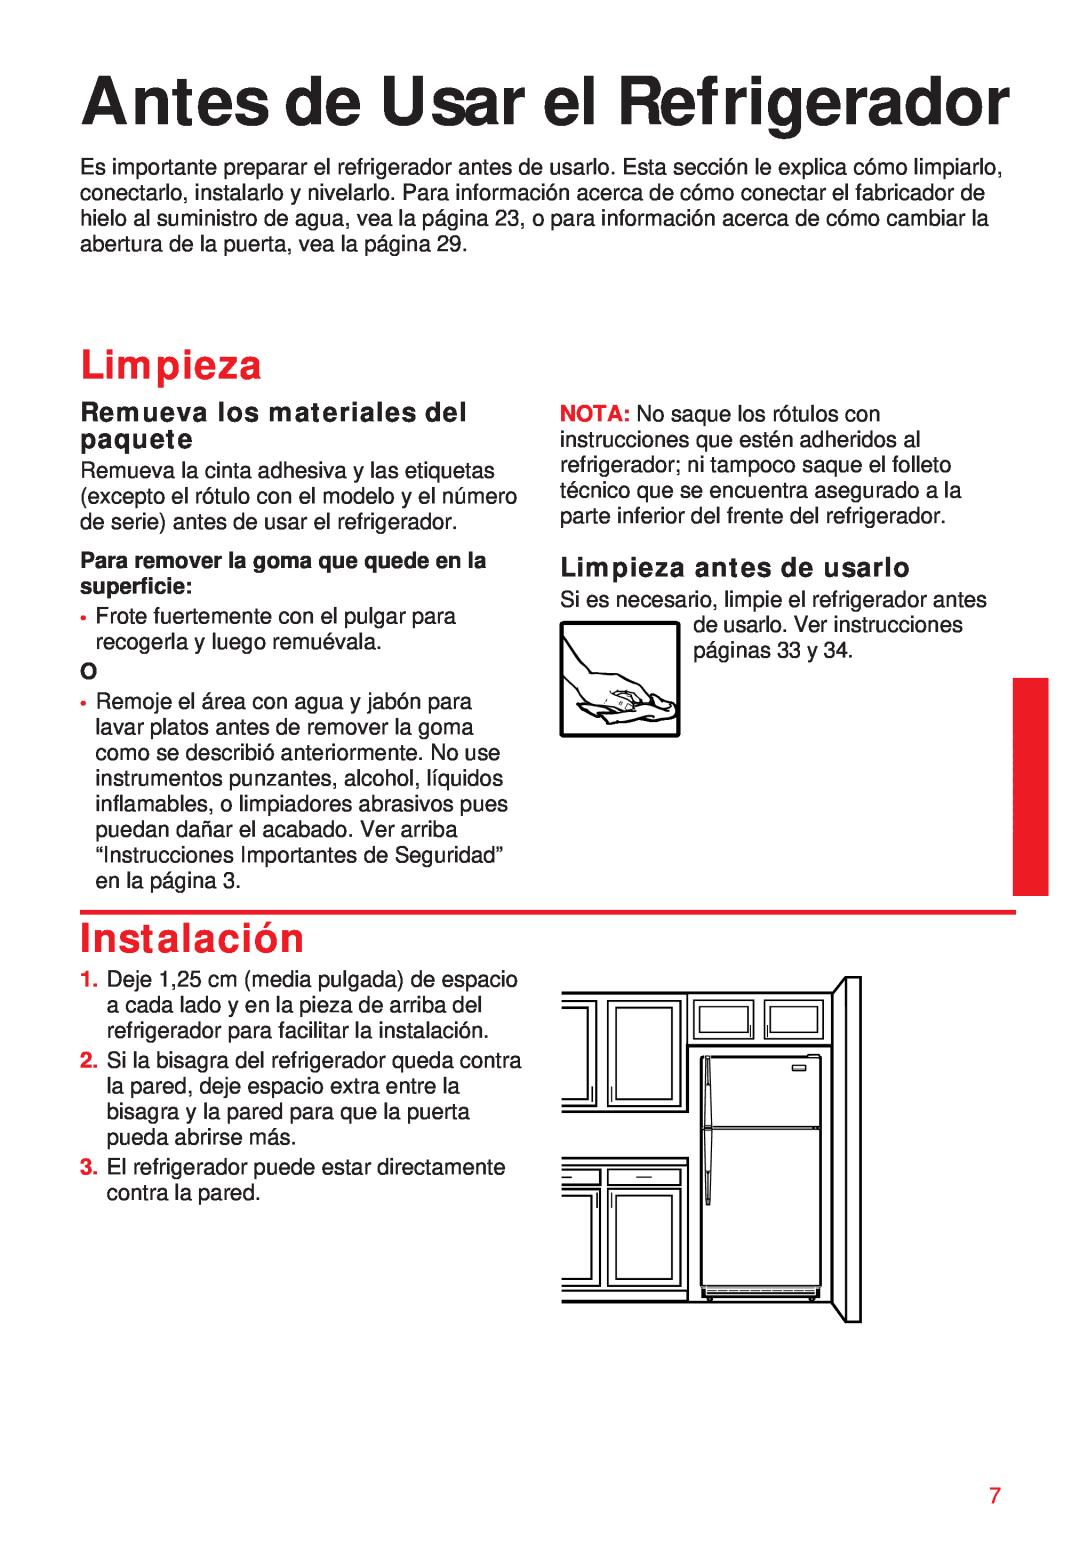 Whirlpool 2195258 manual Antes de Usar el Refrigerador, Limpieza, Instalación, Remueva los materiales del paquete 